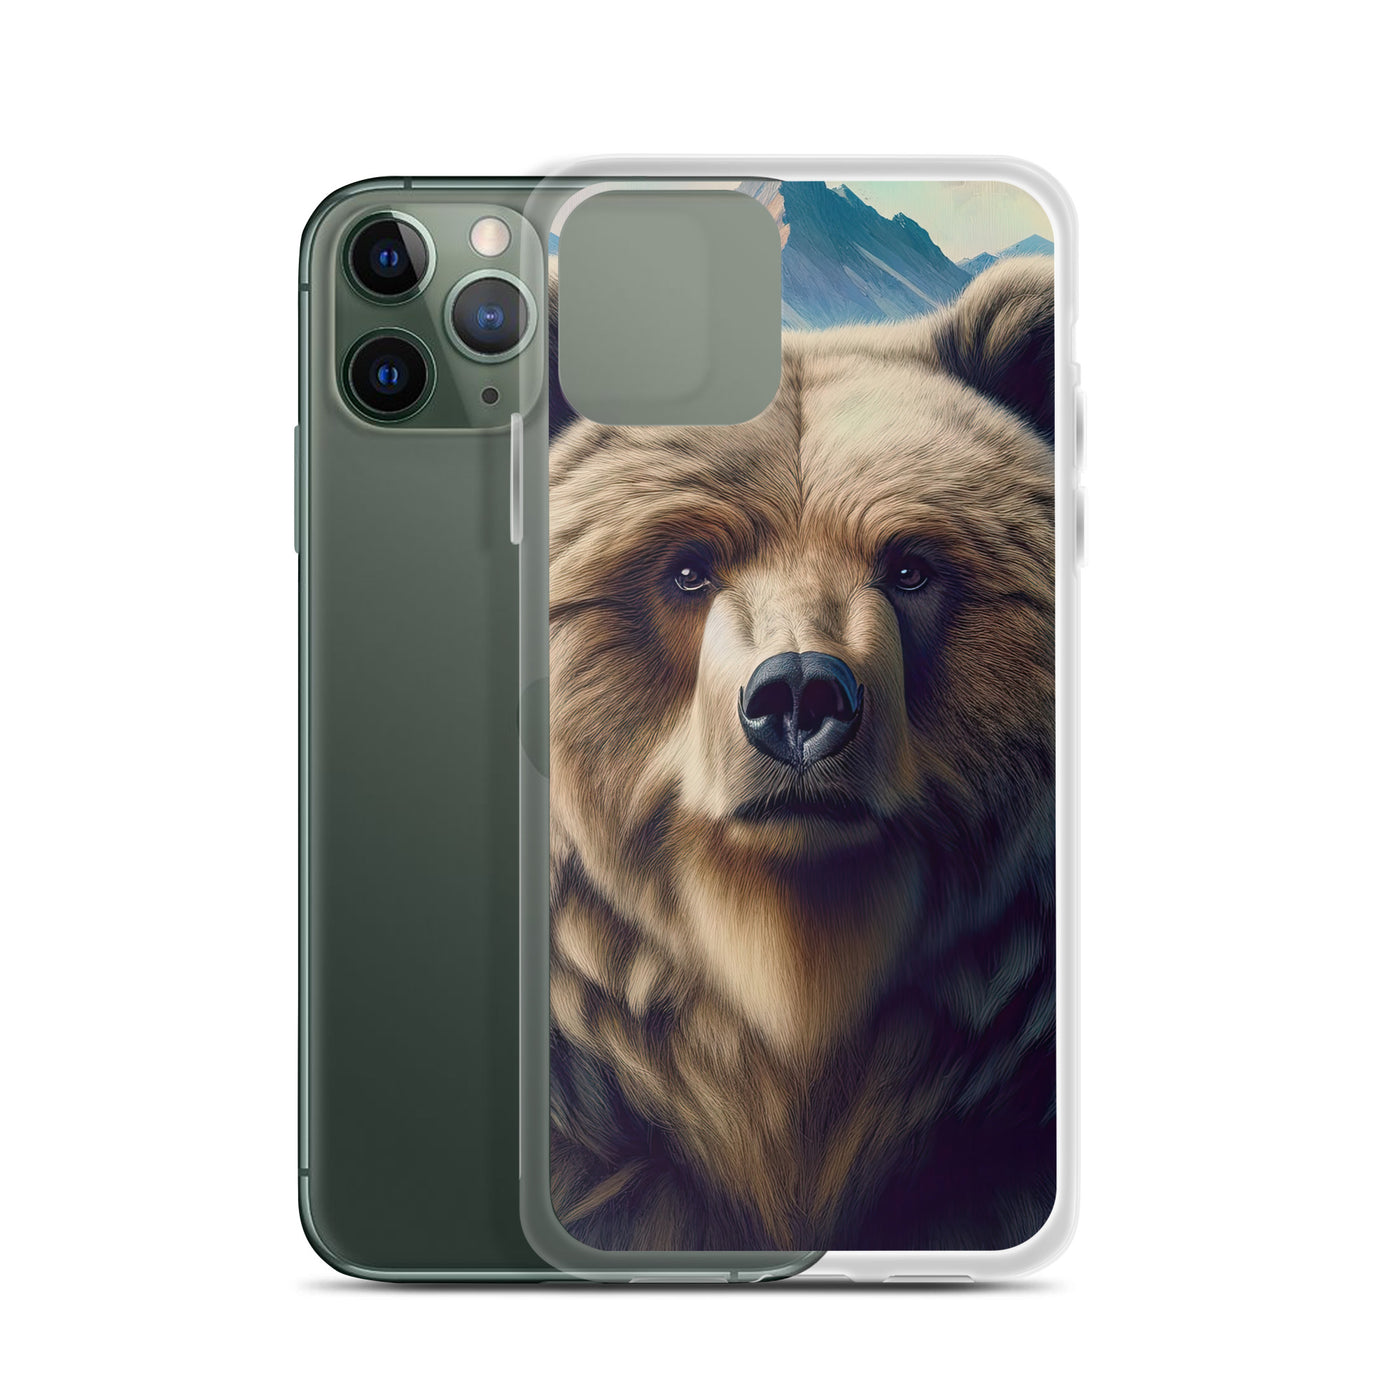 Foto eines Bären vor abstrakt gemalten Alpenbergen, Oberkörper im Fokus - iPhone Schutzhülle (durchsichtig) camping xxx yyy zzz